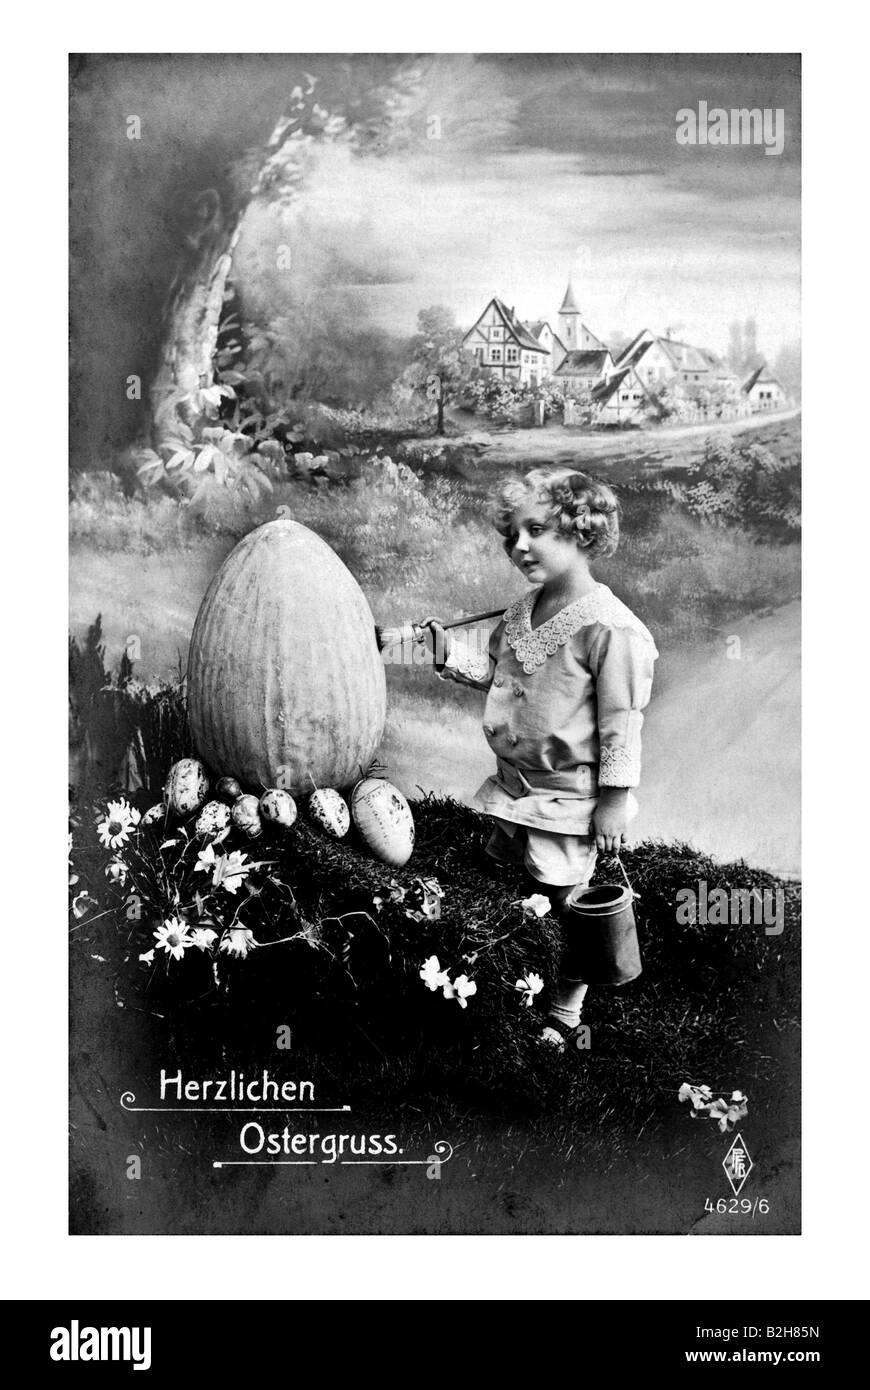 Motif Carte postale peinture enfant oeuf de pâques géant l'Allemagne du xixe siècle Banque D'Images